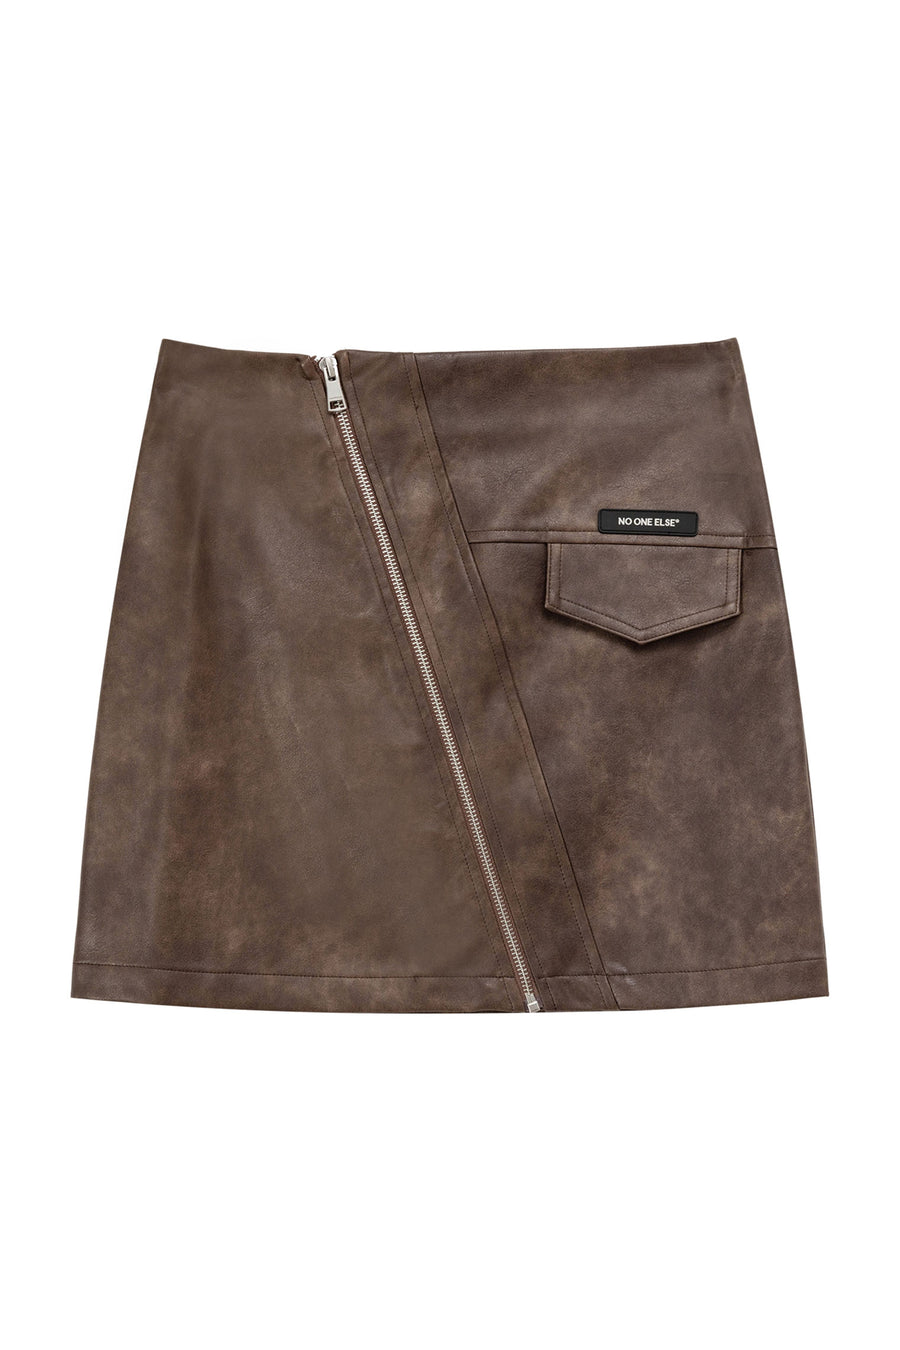 CHUU Zipper Leather Skirt